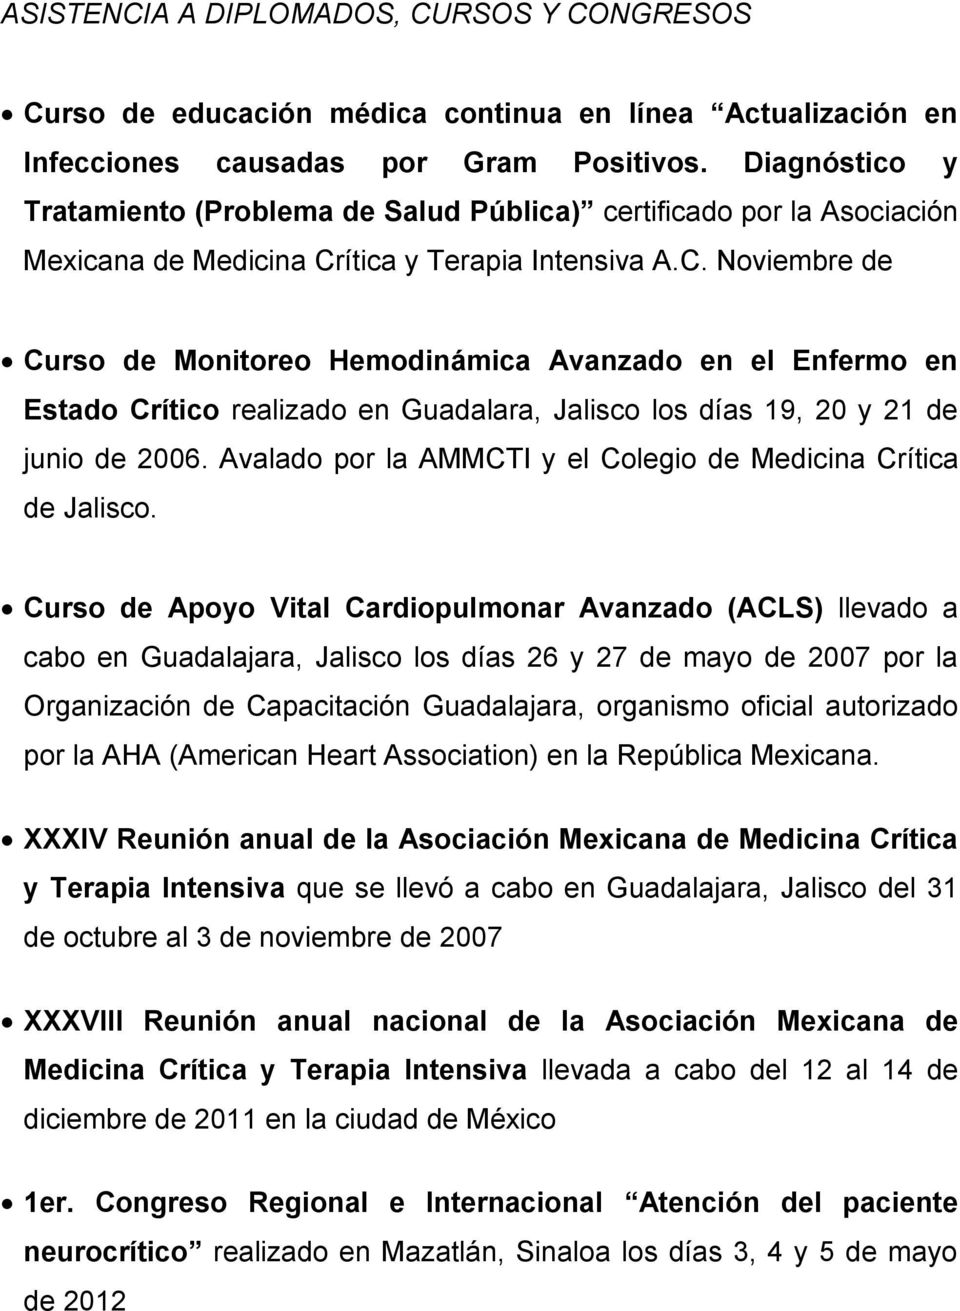 ítica y Terapia Intensiva A.C. Noviembre de Curso de Monitoreo Hemodinámica Avanzado en el Enfermo en Estado Crítico realizado en Guadalara, Jalisco los días 19, 20 y 21 de junio de 2006.